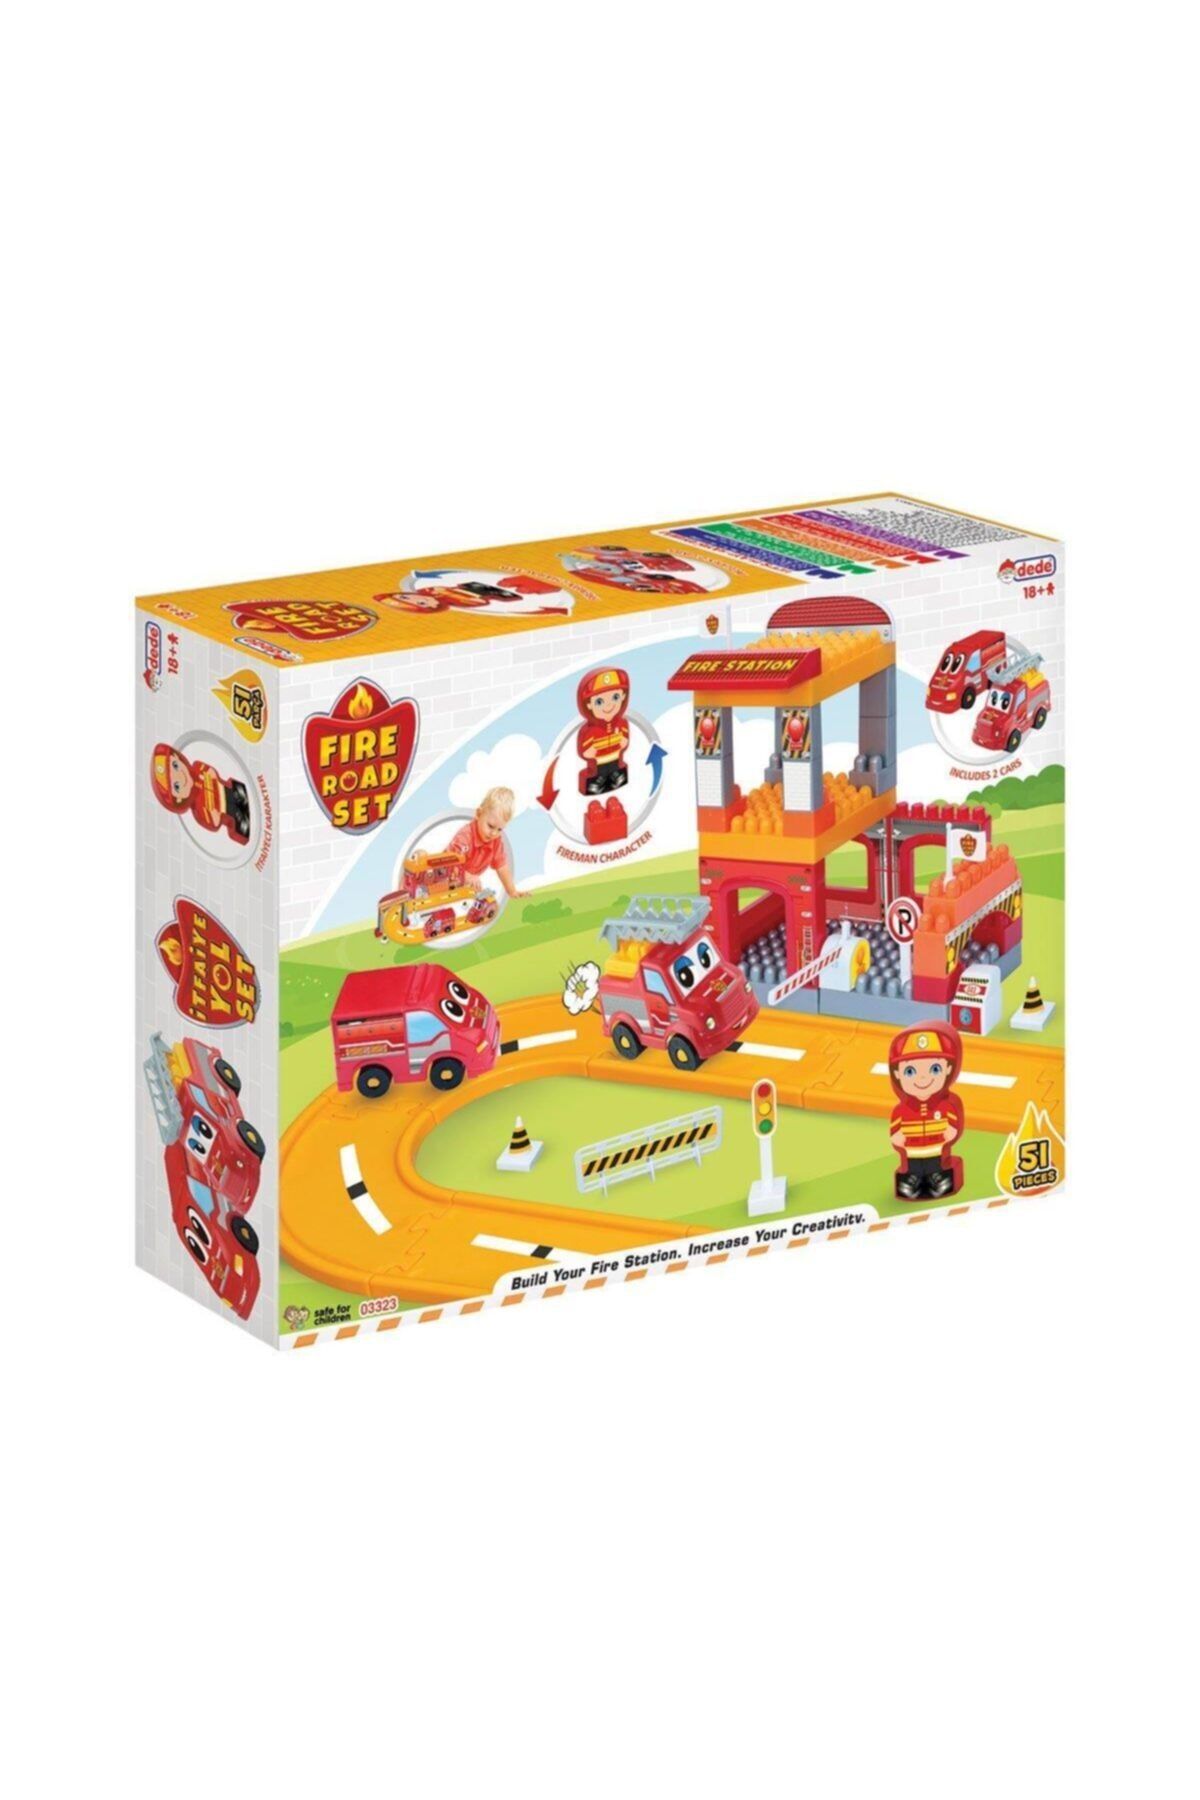 LEGO Marka: Fen Toys 03323 Dede, Itfaiye Yol Seti Kategori: Spor Oyuncakları